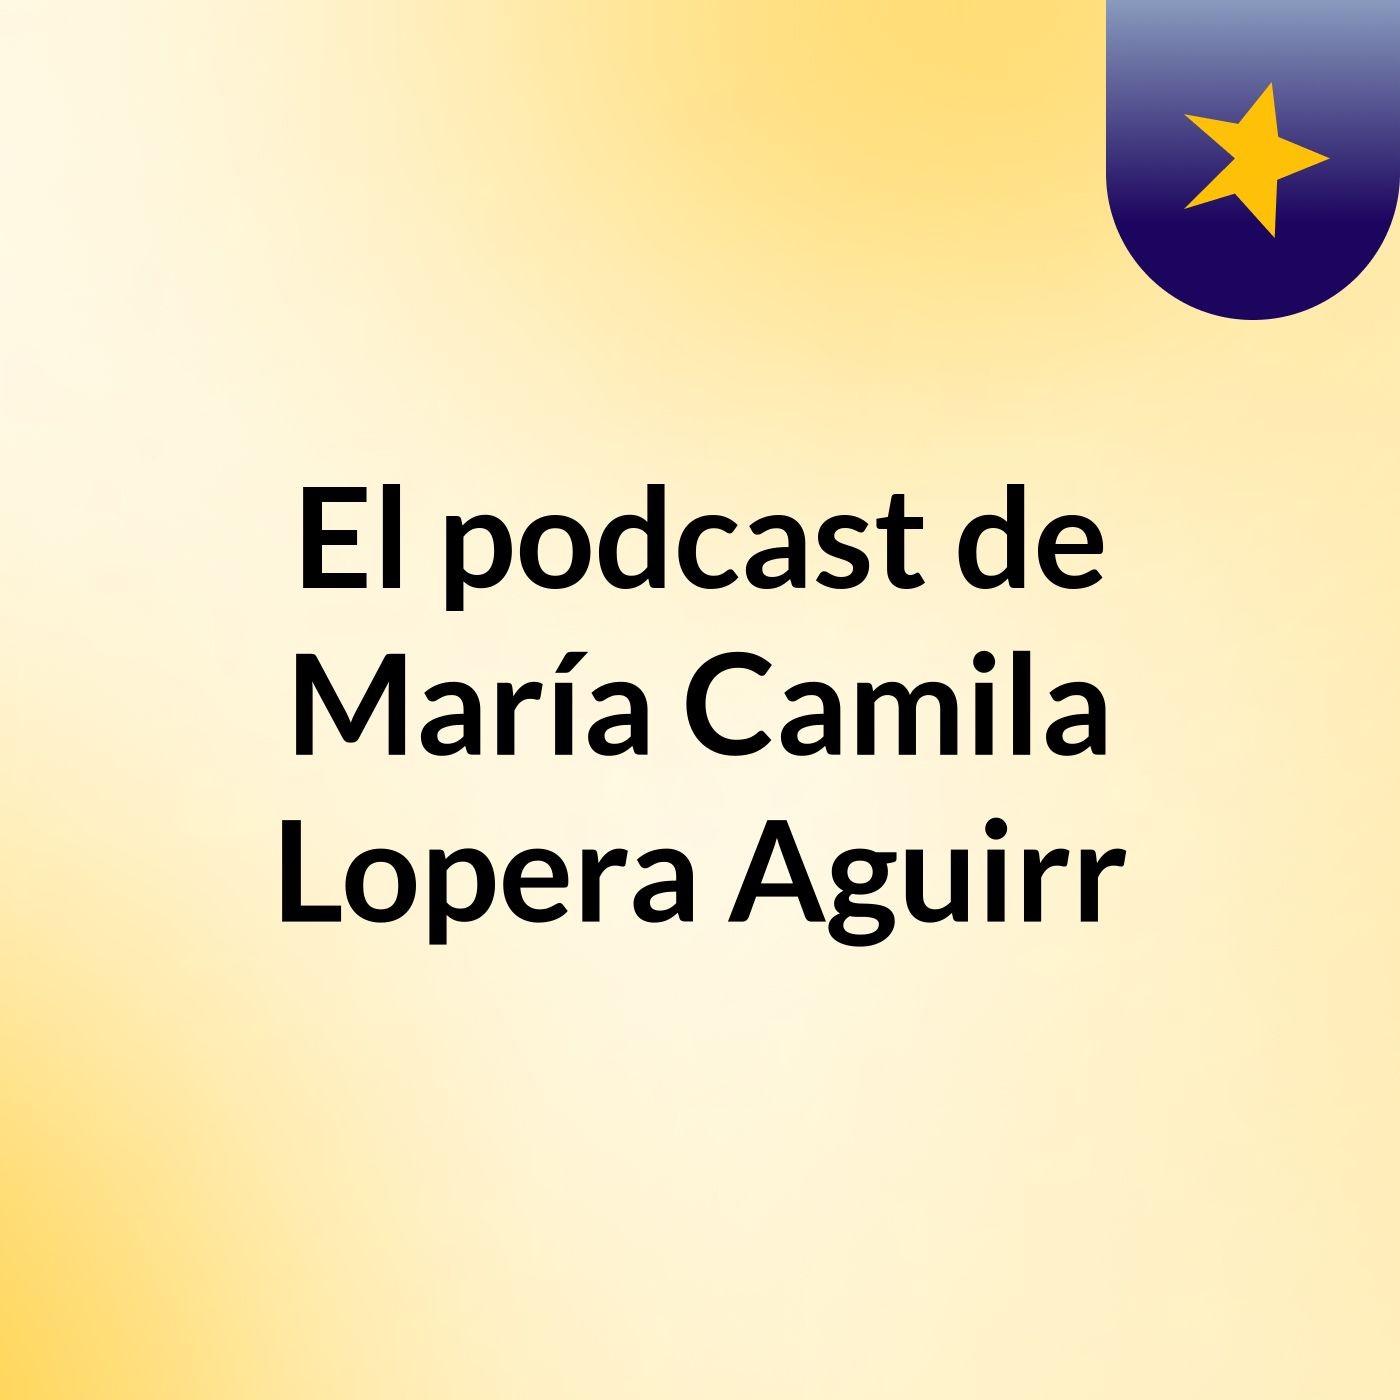 El podcast de María Camila Lopera Aguirr